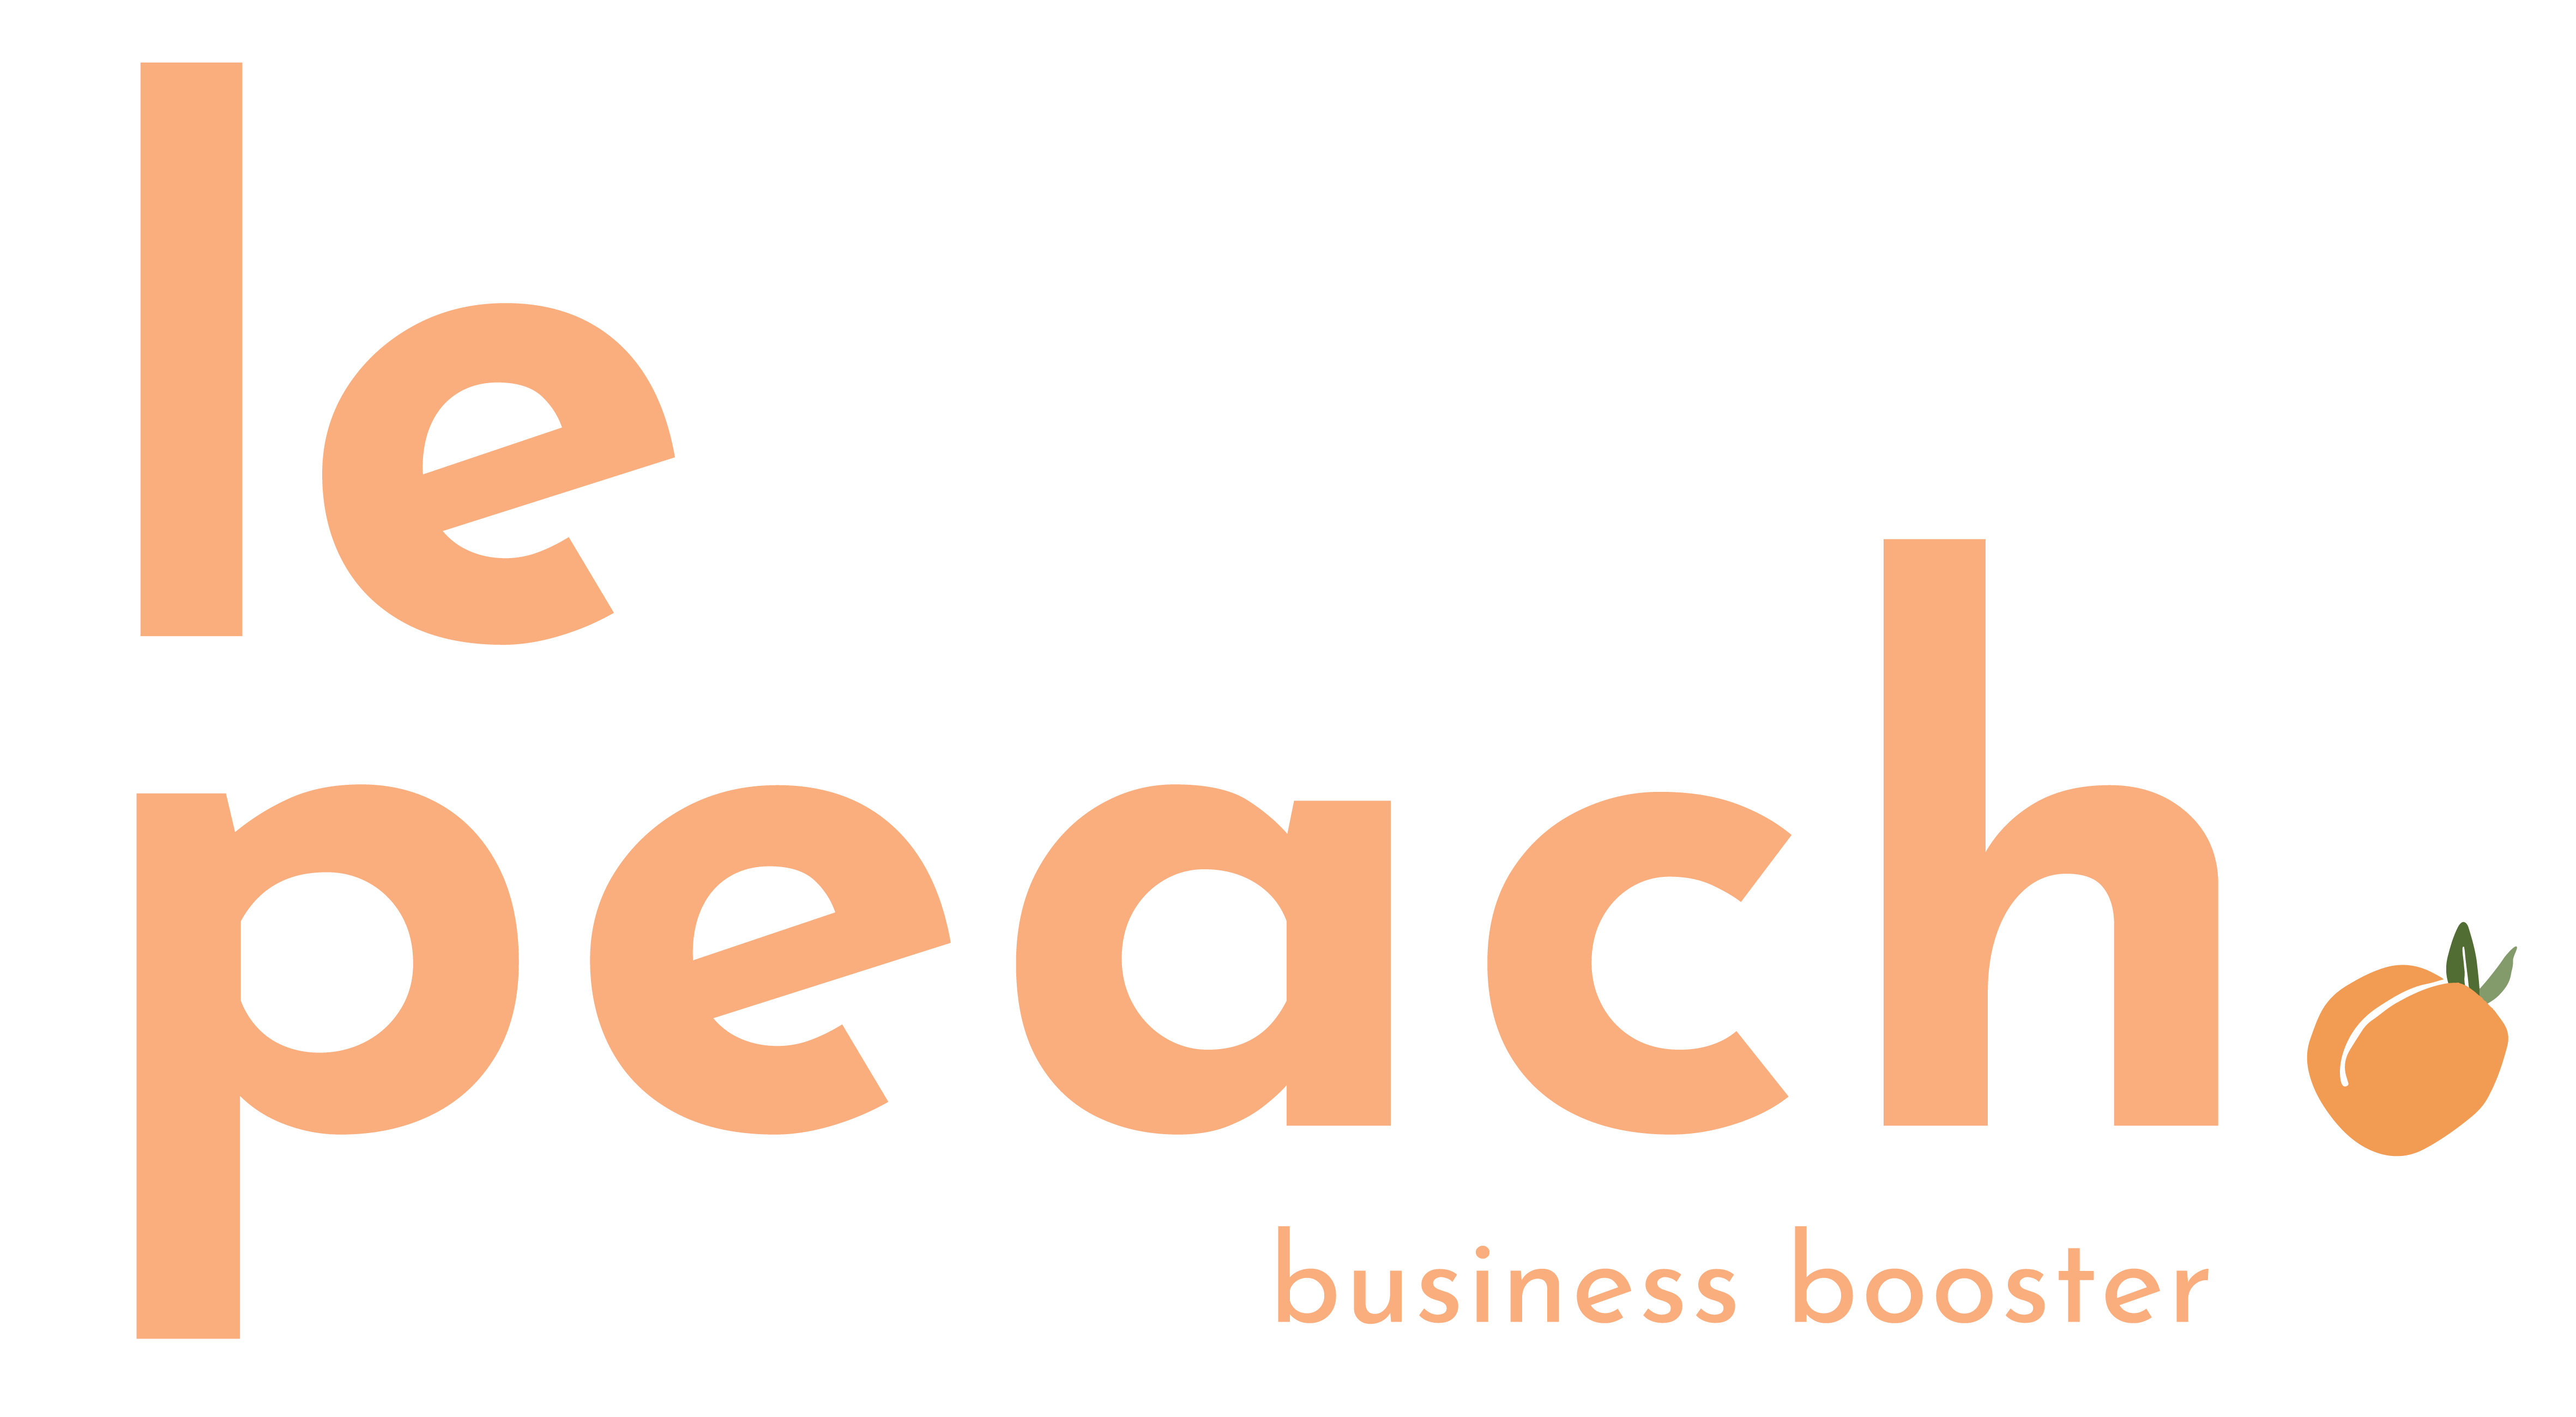 le peach logo